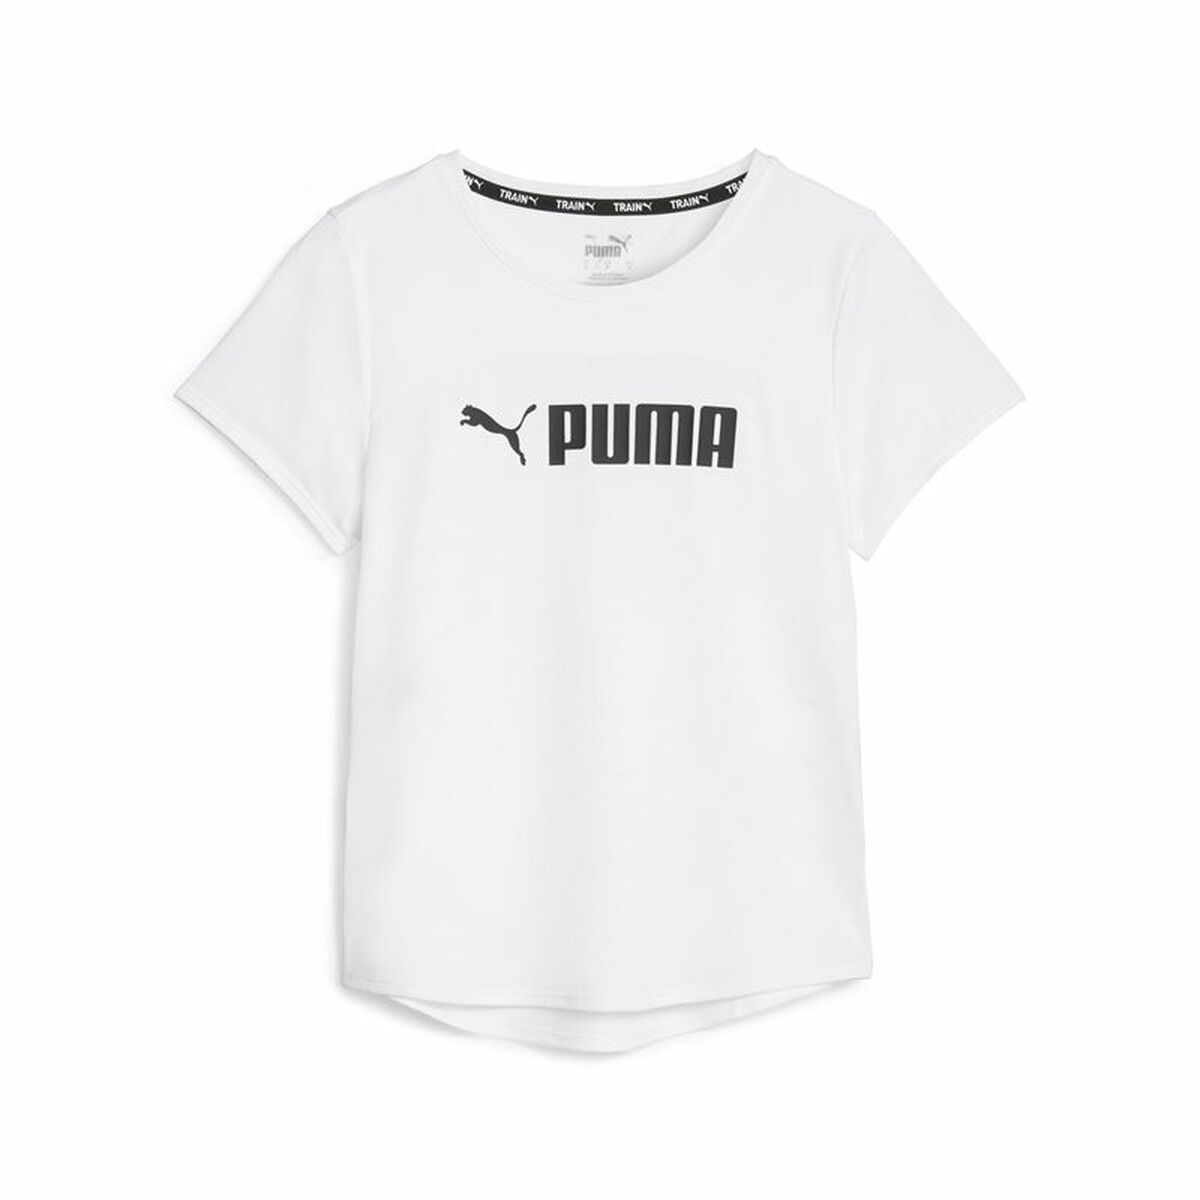 Osta tuote Naisten T-paita Puma Fit Logo Ultra Valkoinen (M) (Koko: M) verkkokaupastamme Korhone: Urheilu & Vapaa-aika 10% alennuksella koodilla KORHONE